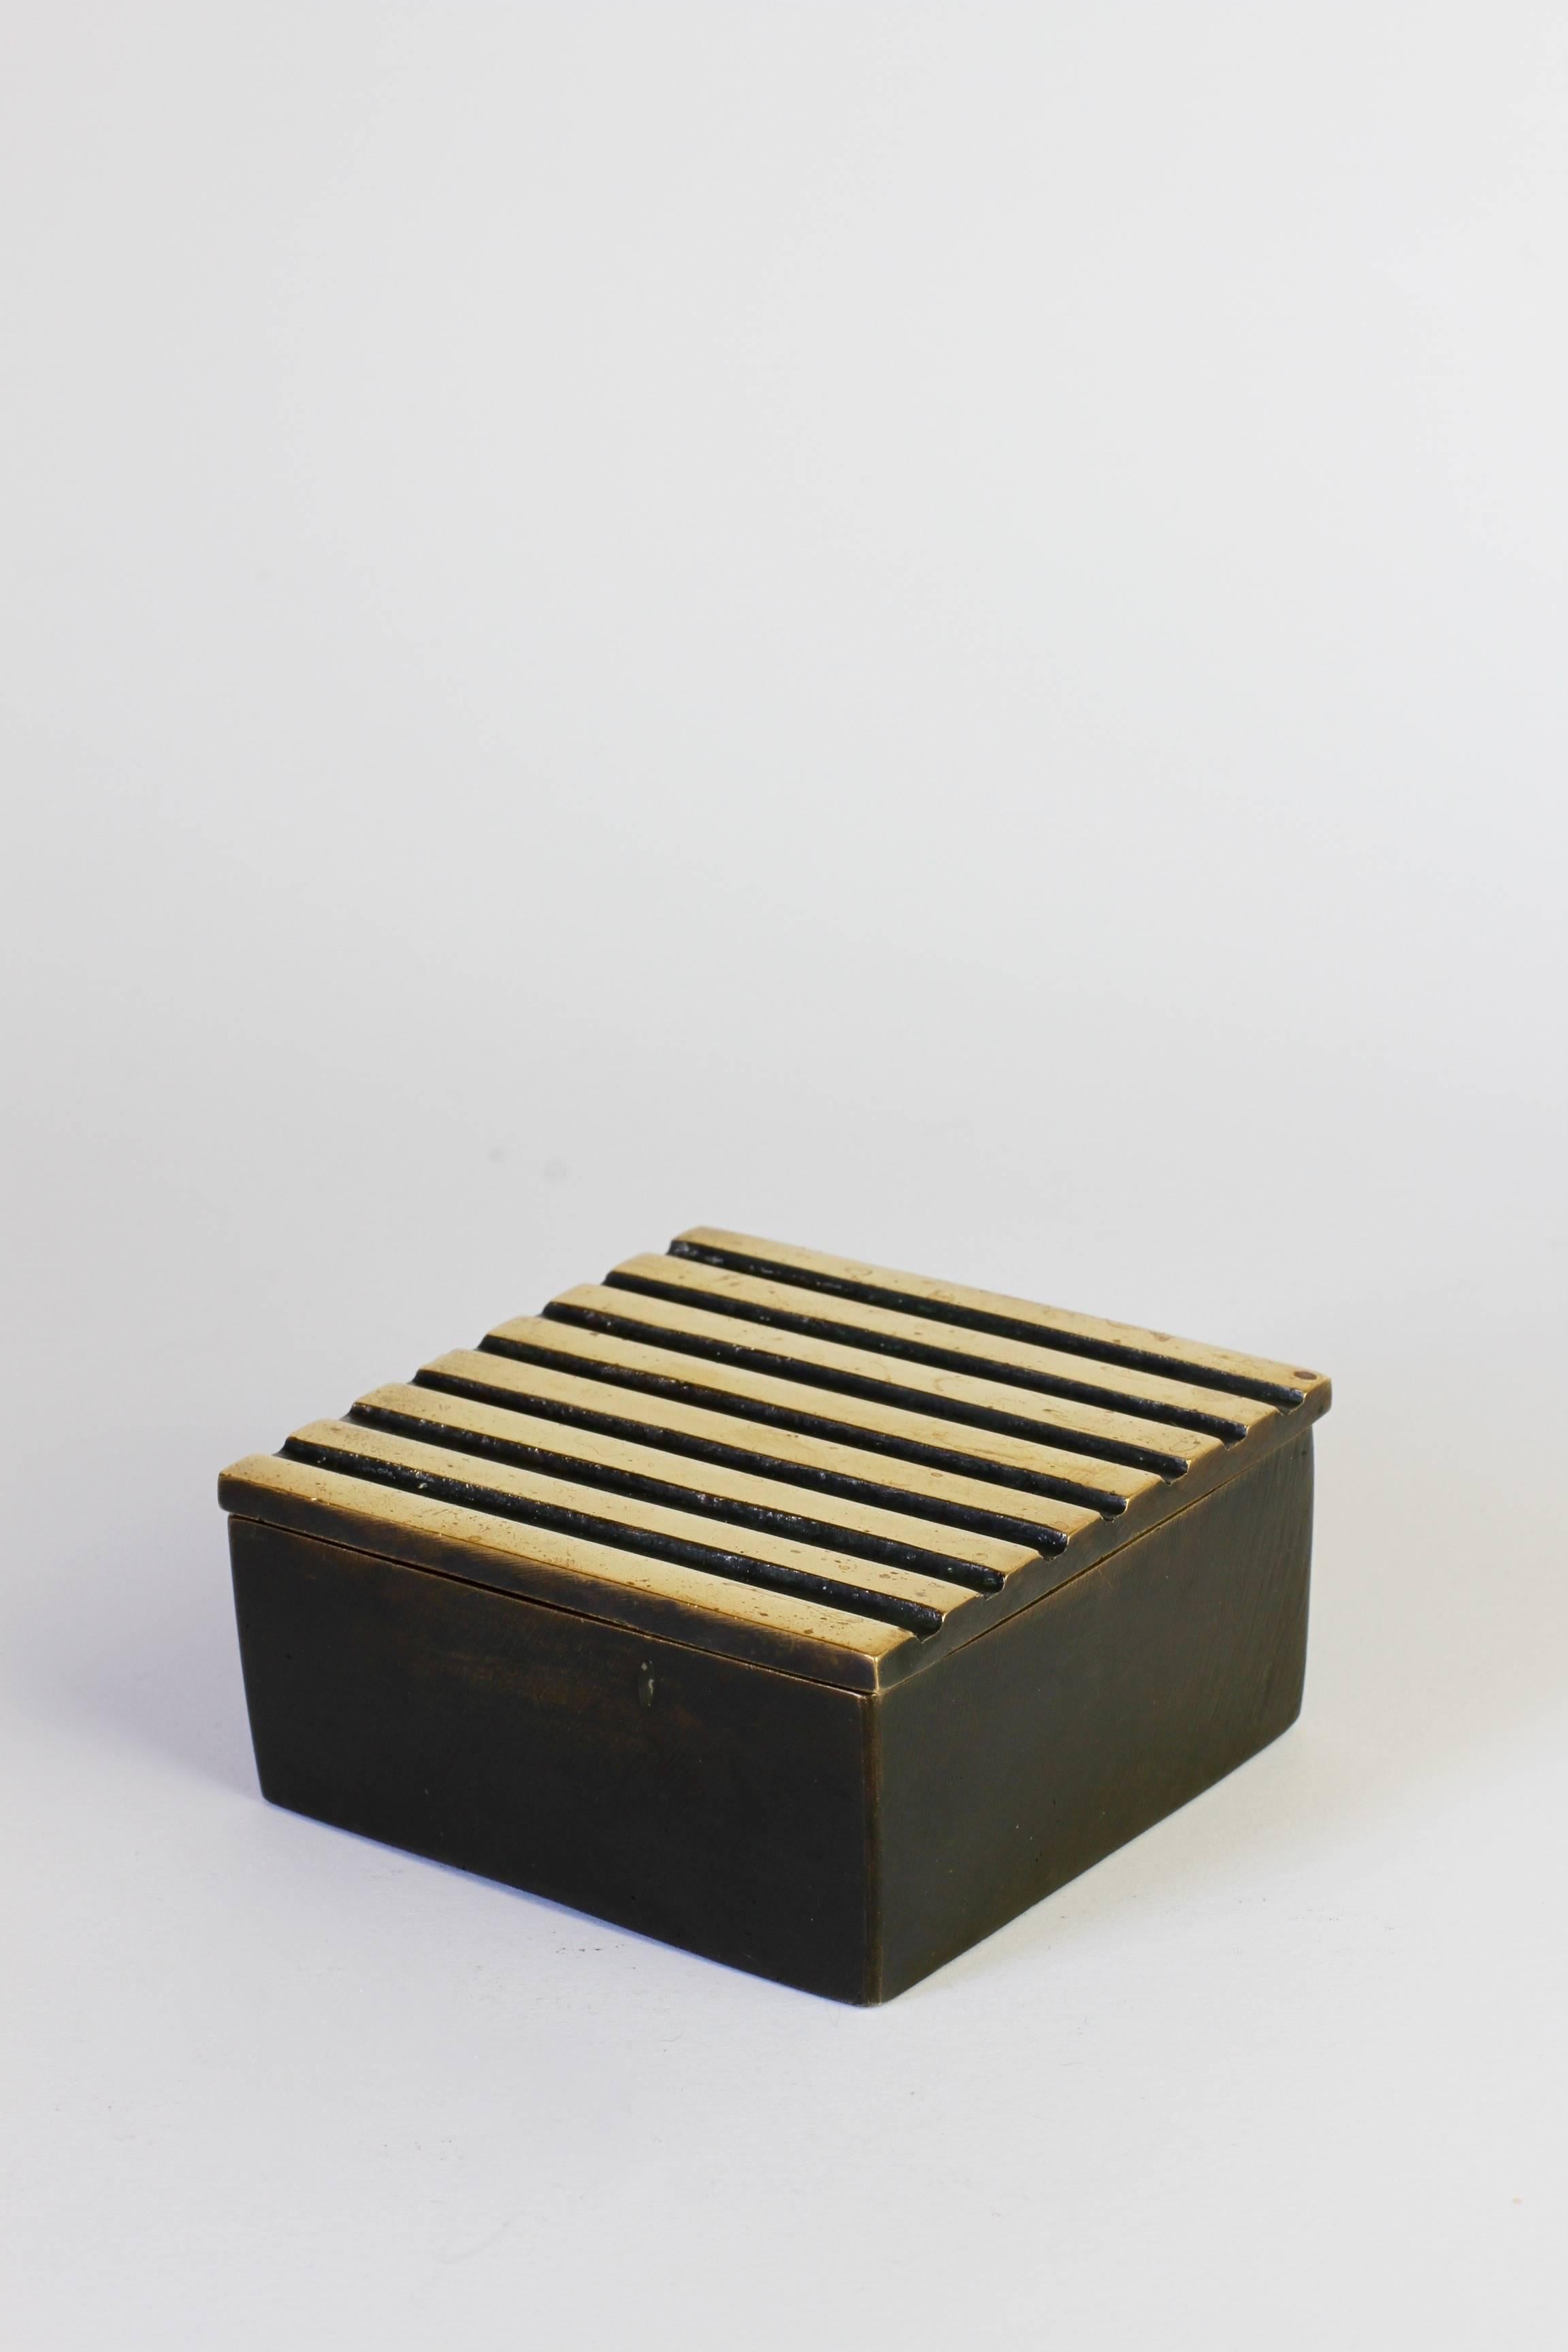 Eine von Walter Bosse entworfene, äußerst seltene Messingdose zur Aufbewahrung von Zigaretten oder Tabak.

Wir haben dieses Beispiel noch in keiner Publikation über Bosse's Werk gefunden, obwohl ähnliche Beispiele veröffentlicht wurden,